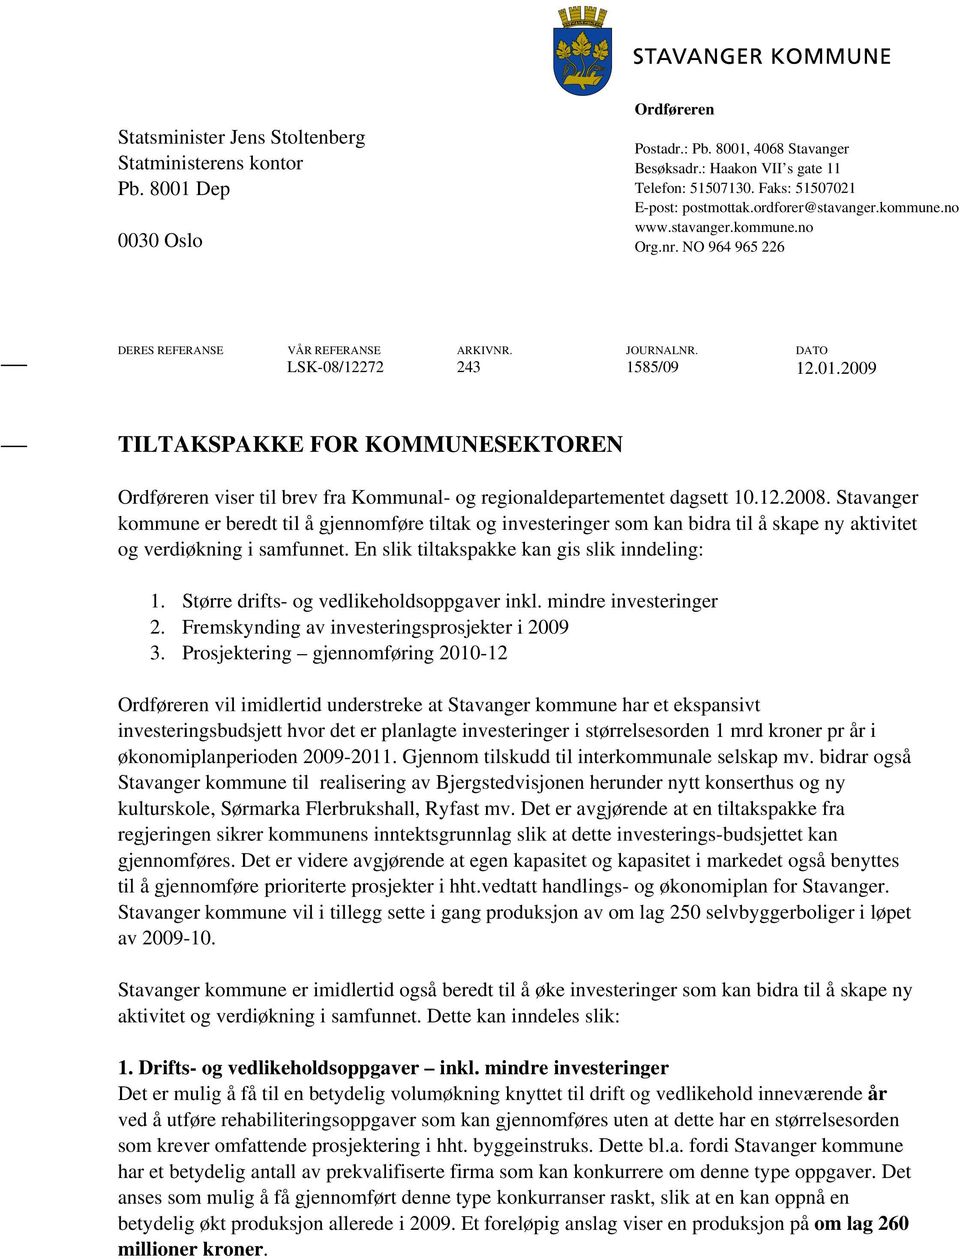 2009 TILTAKSPAKKE FOR KOMMUNESEKTOREN Ordføreren viser til brev fra Kommunal- og regionaldepartementet dagsett 10.12.2008.